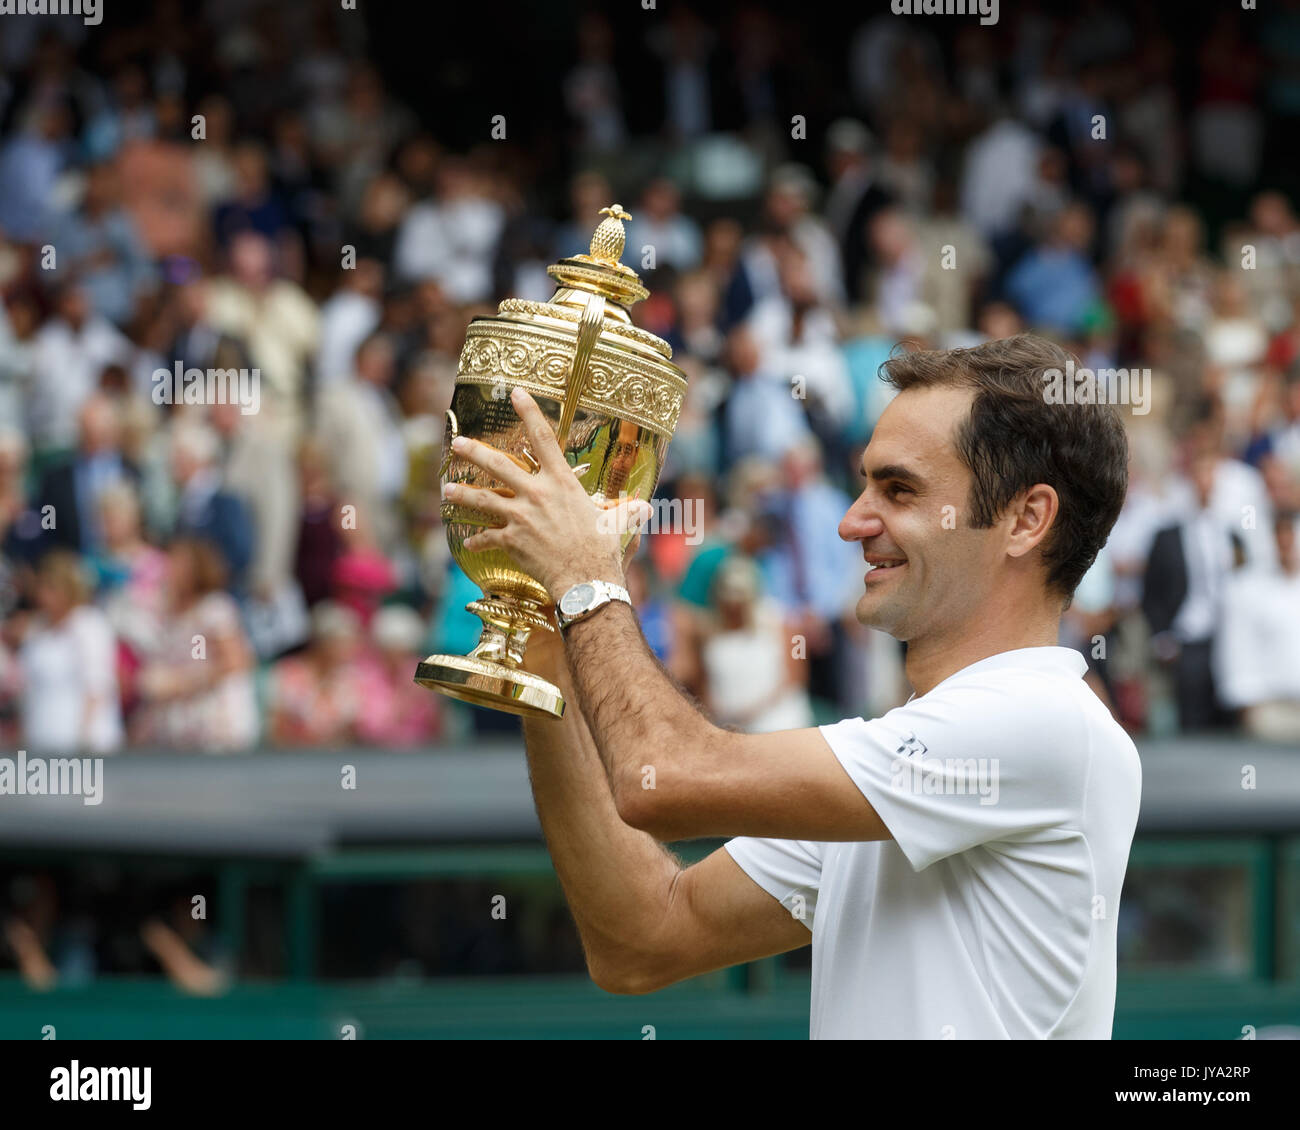 Roger Federer holding trophy après avoir remporté le match final du tournoi de tennis de Wimbledon 2017, Londres Banque D'Images